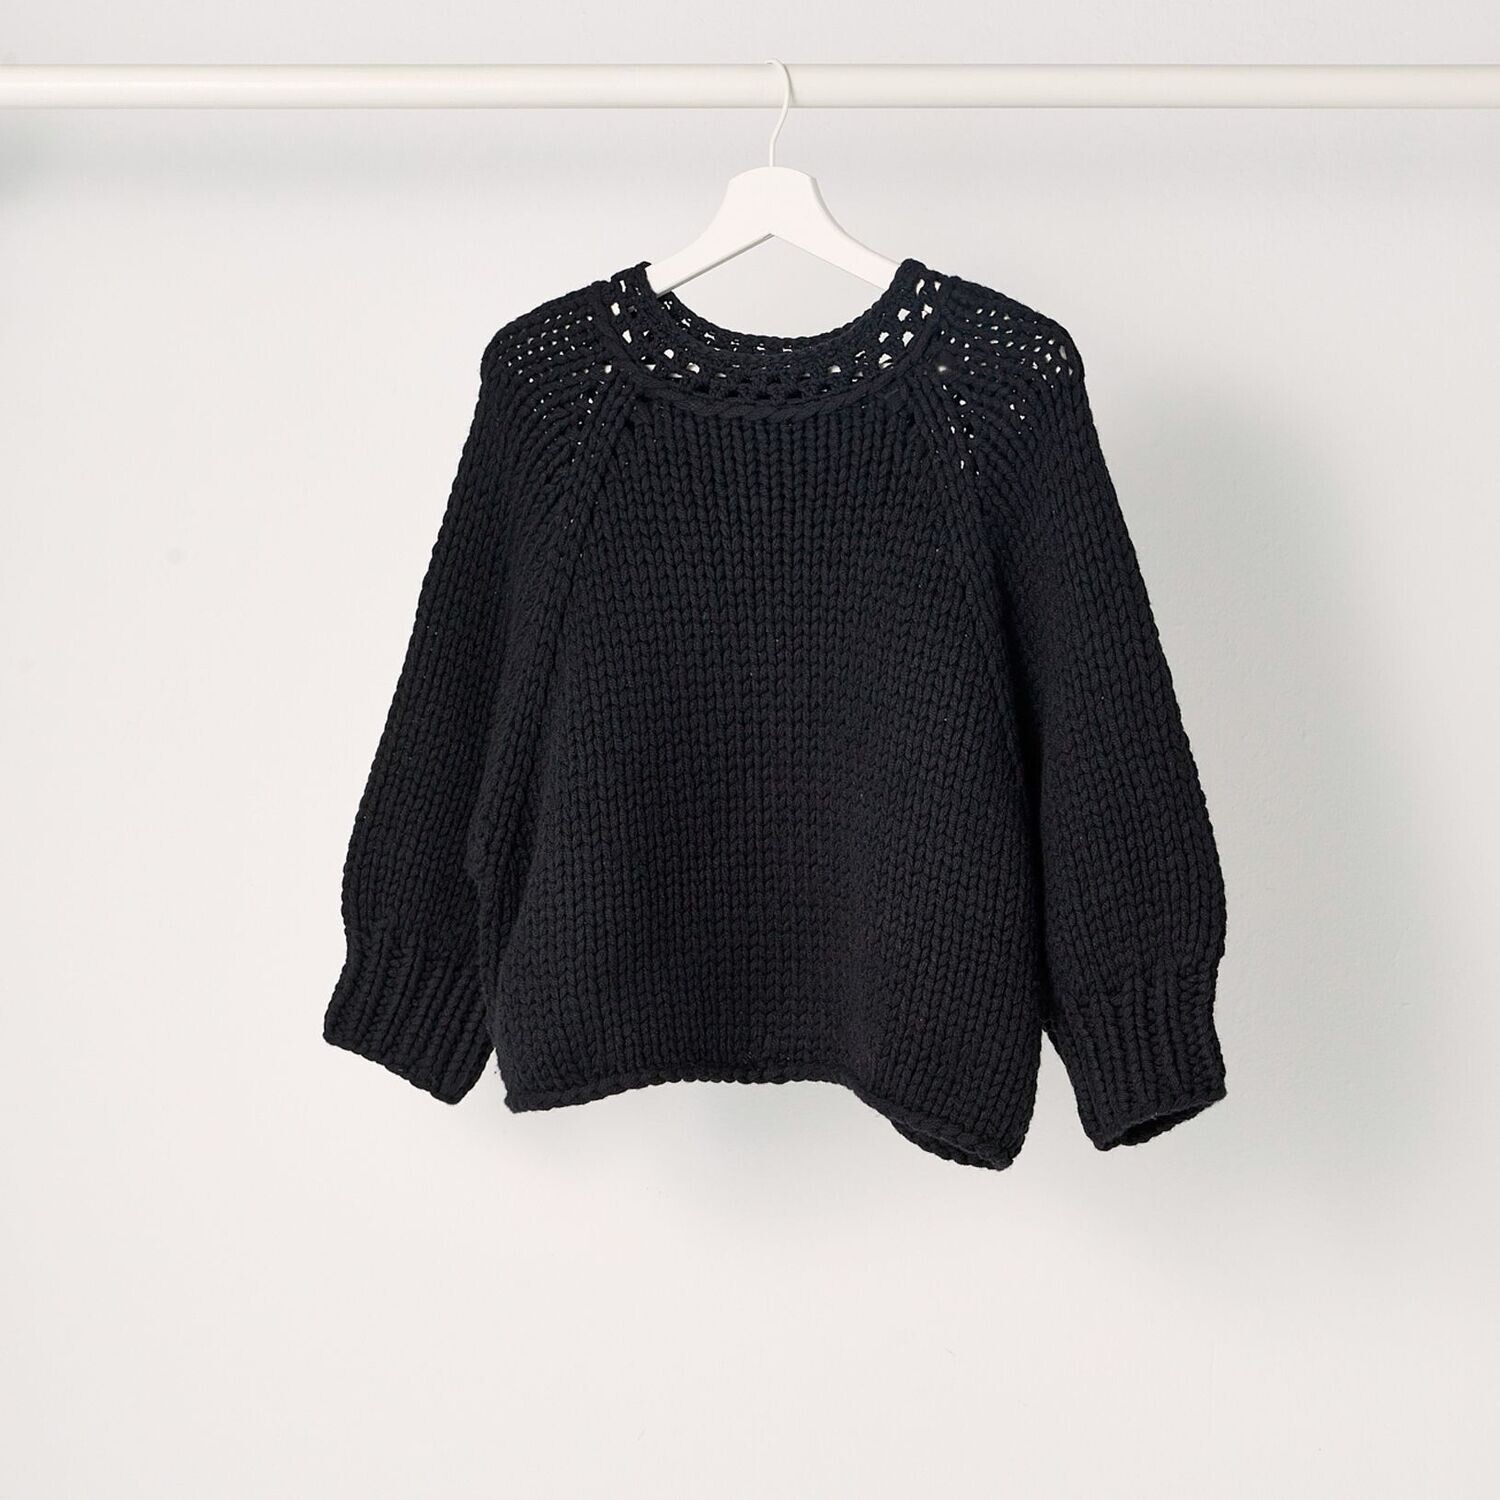 Cropped Sweater CARLIE, Farbe: schwarz, Größe: M/L